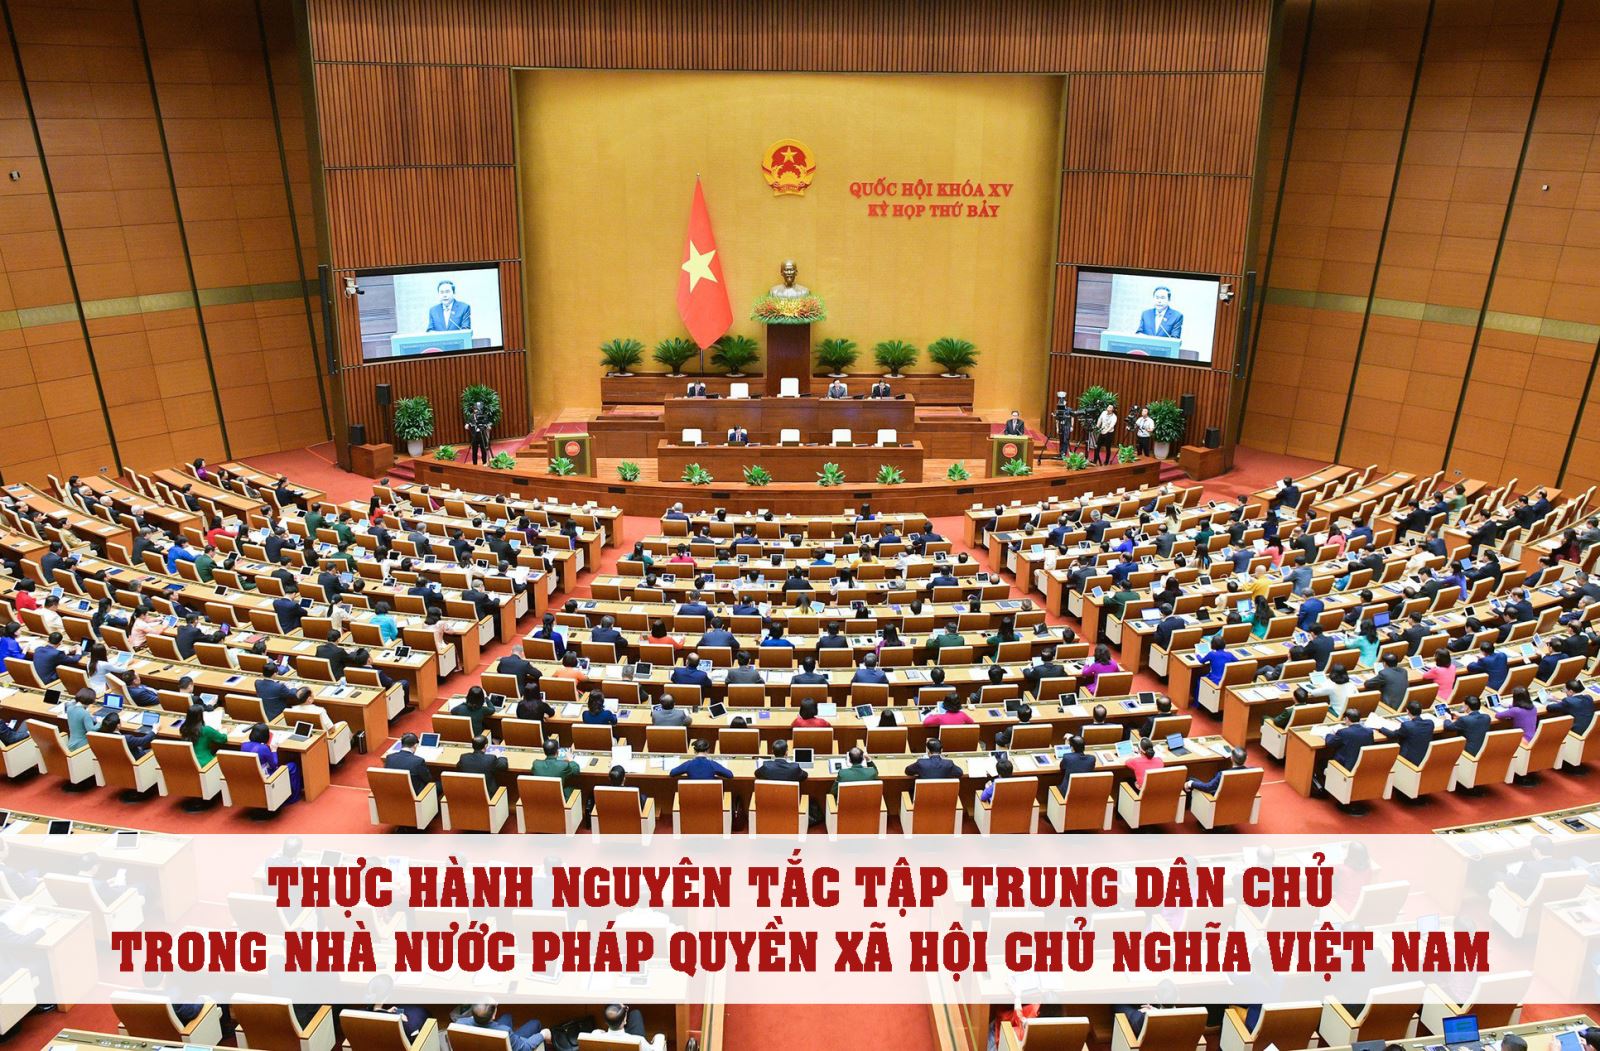 Một số vấn đề về nhận thức và thực hành nguyên tắc tập trung dân chủ trong Nhà nước pháp quyền xã hội chủ nghĩa Việt Nam